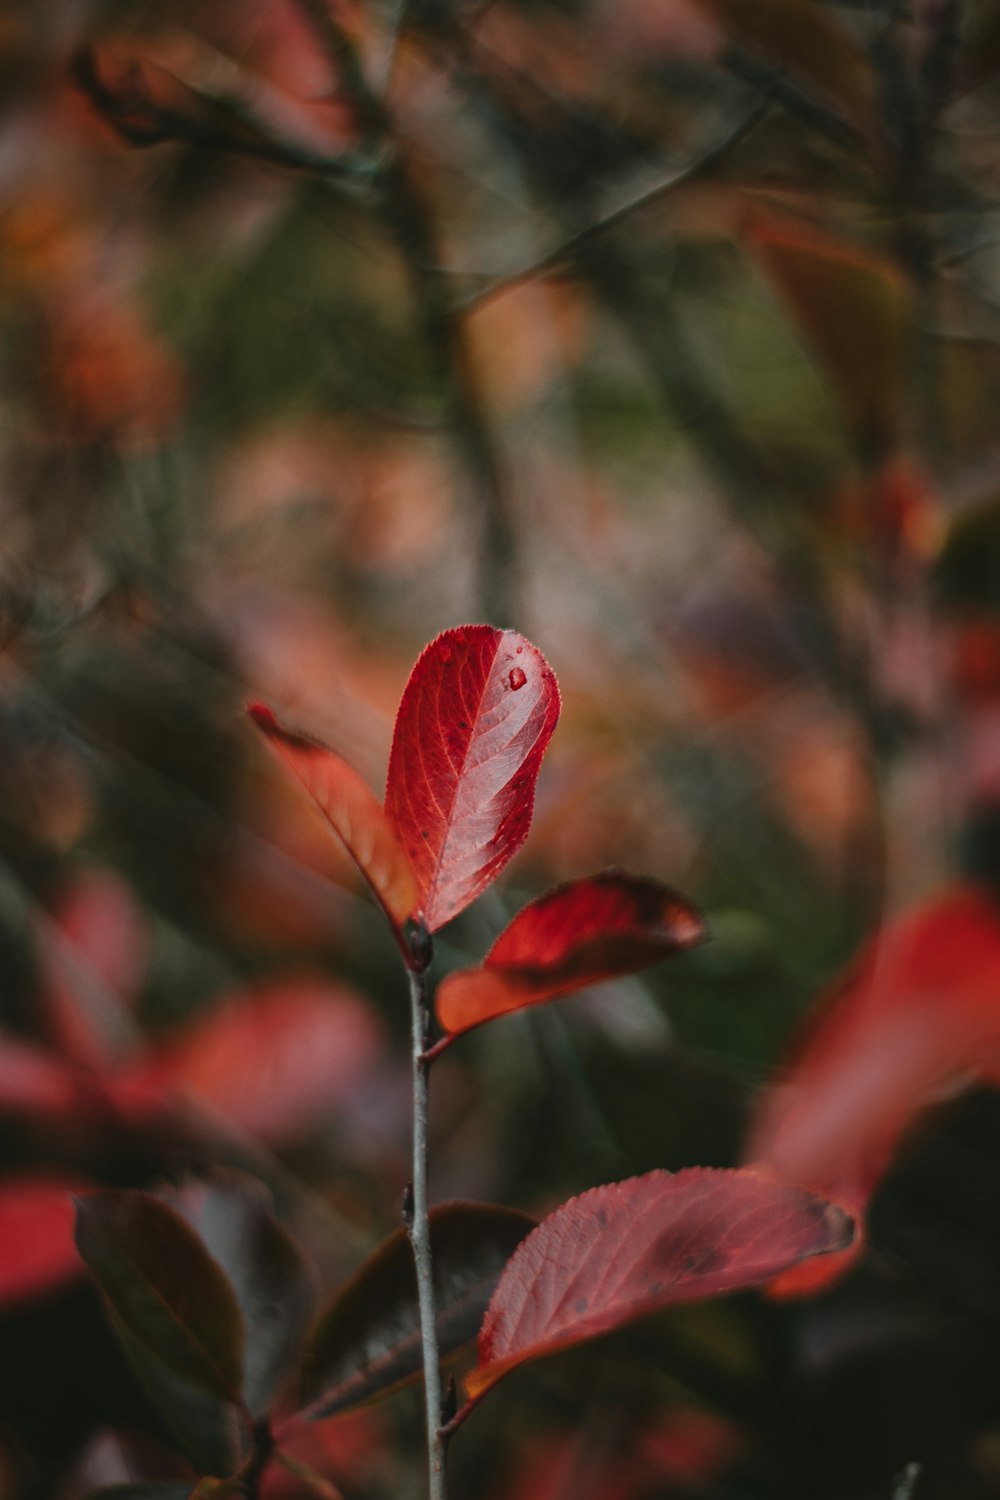 red leaf in tilt shift lens